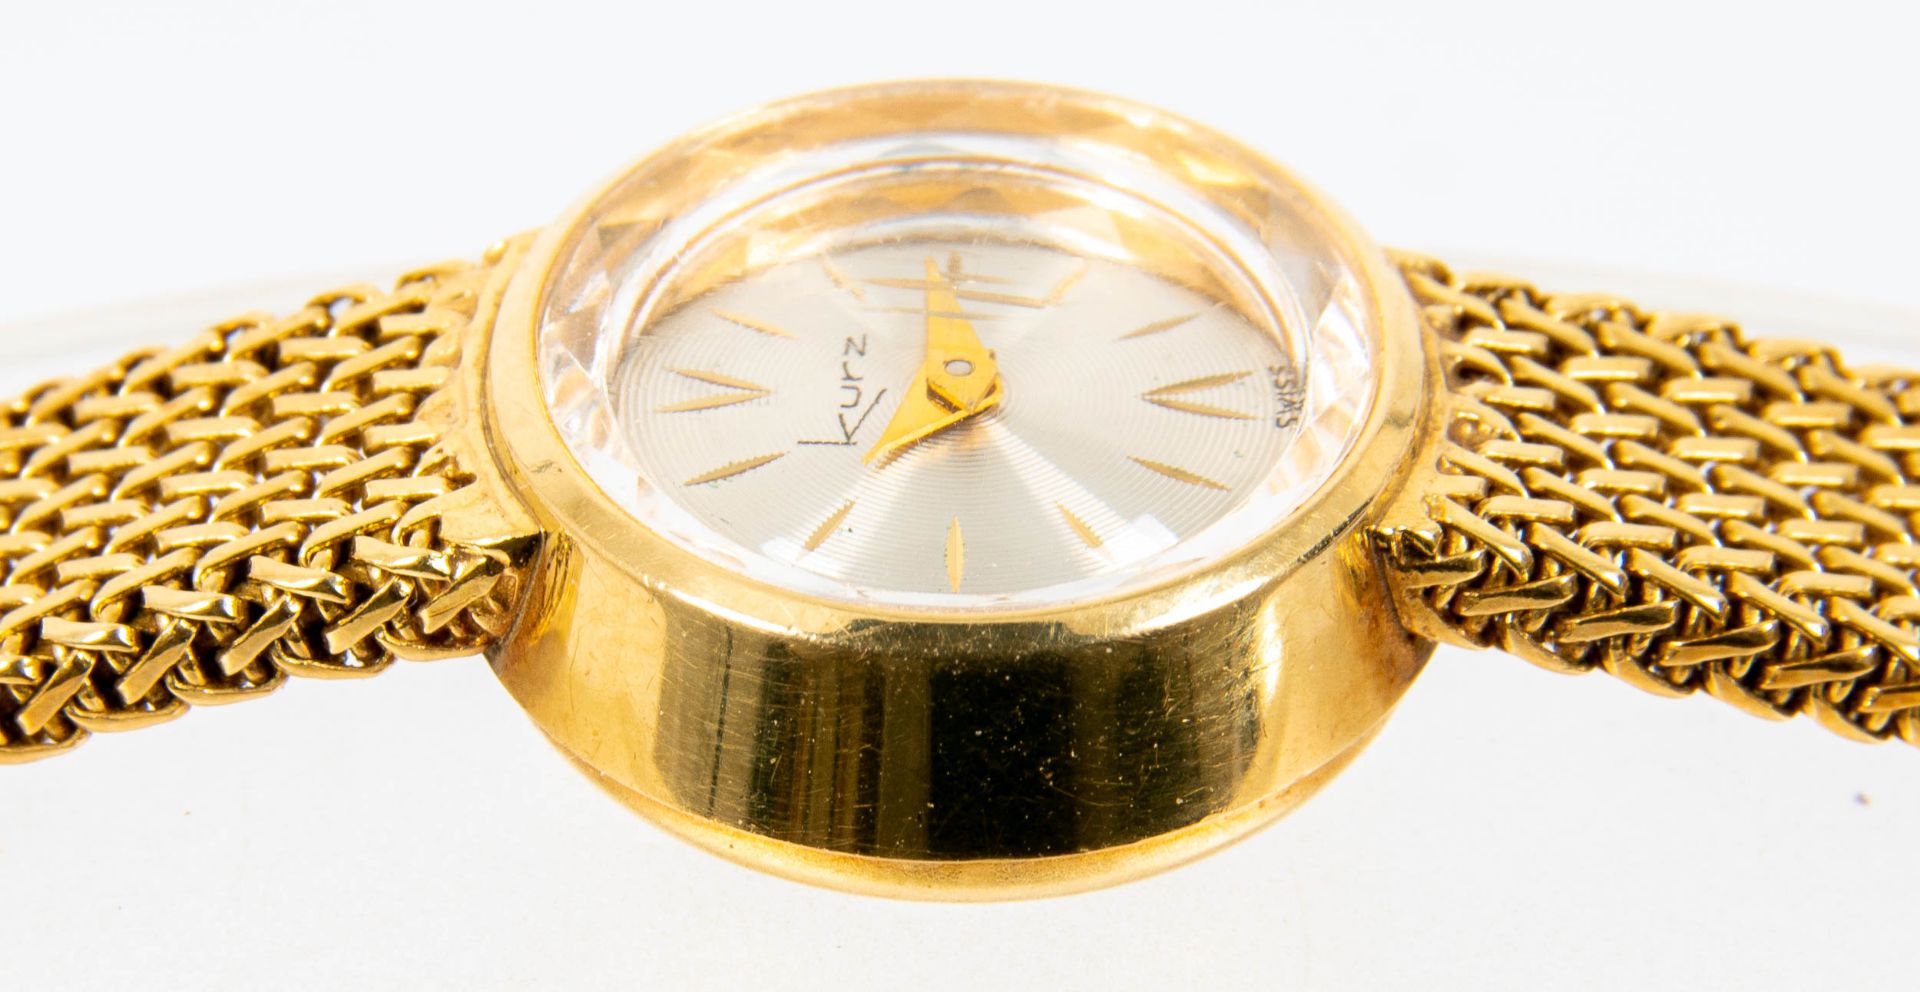 Klassische Damenarmbanduhr der Marke "KURZ-SWISS", Gehäuse und Armband in 750er Gelbgold, Werk läuf - Image 9 of 9